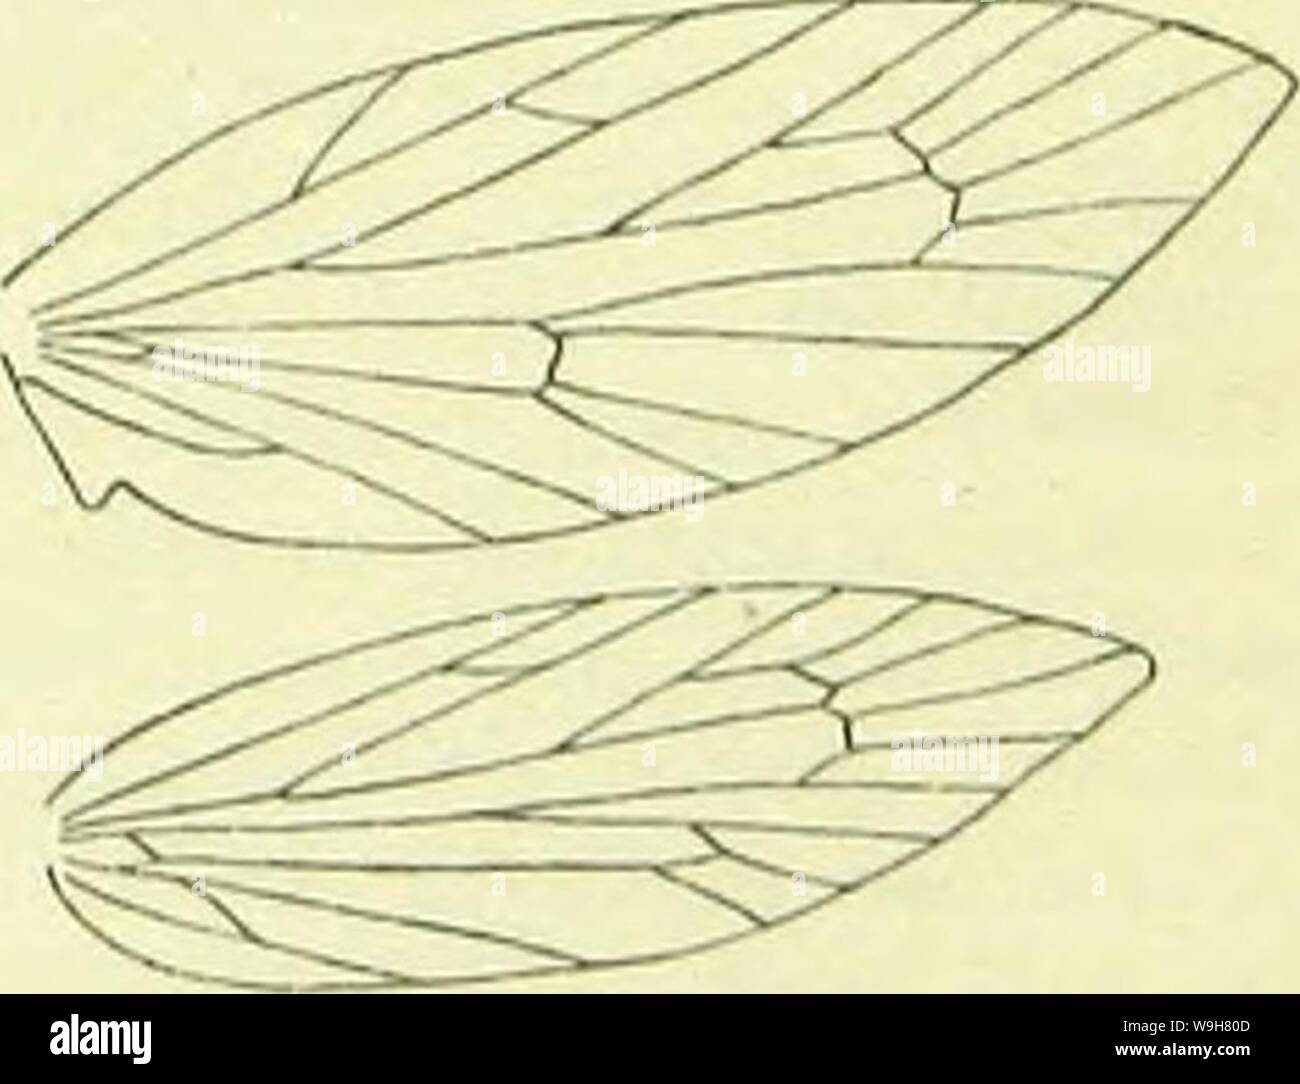 Image d'archive à partir de la page 814 d'un manuel de British lepidoptera. A handbook of British lepidoptera CUbiodiversity1126142 Année : 1895 ( MIl-nOl'TERYXl TKRYfiWAE oohreous avec'MICROI-blanchâtre. Antennes . Ailes antérieures allongés, brouzy-violet, plus ou moins parsemé d'or pâle brillant ; un étroit légèrement courbe dorsale transversale blanche place avant tornus, atteignant environ la moitié de l'ensemble aile ; gris ; 9 cils présents. Ailes postérieures gris, vers l'extérieur est teinté. La Grande-Bretagne à Caledonian Canal, E. L'Irlande, commun ; N. et C. L'Europe ; 4. Tête de larve blanchâtre ; Brown, bouche plus sombre, lobes postérieur montrant restaur Banque D'Images